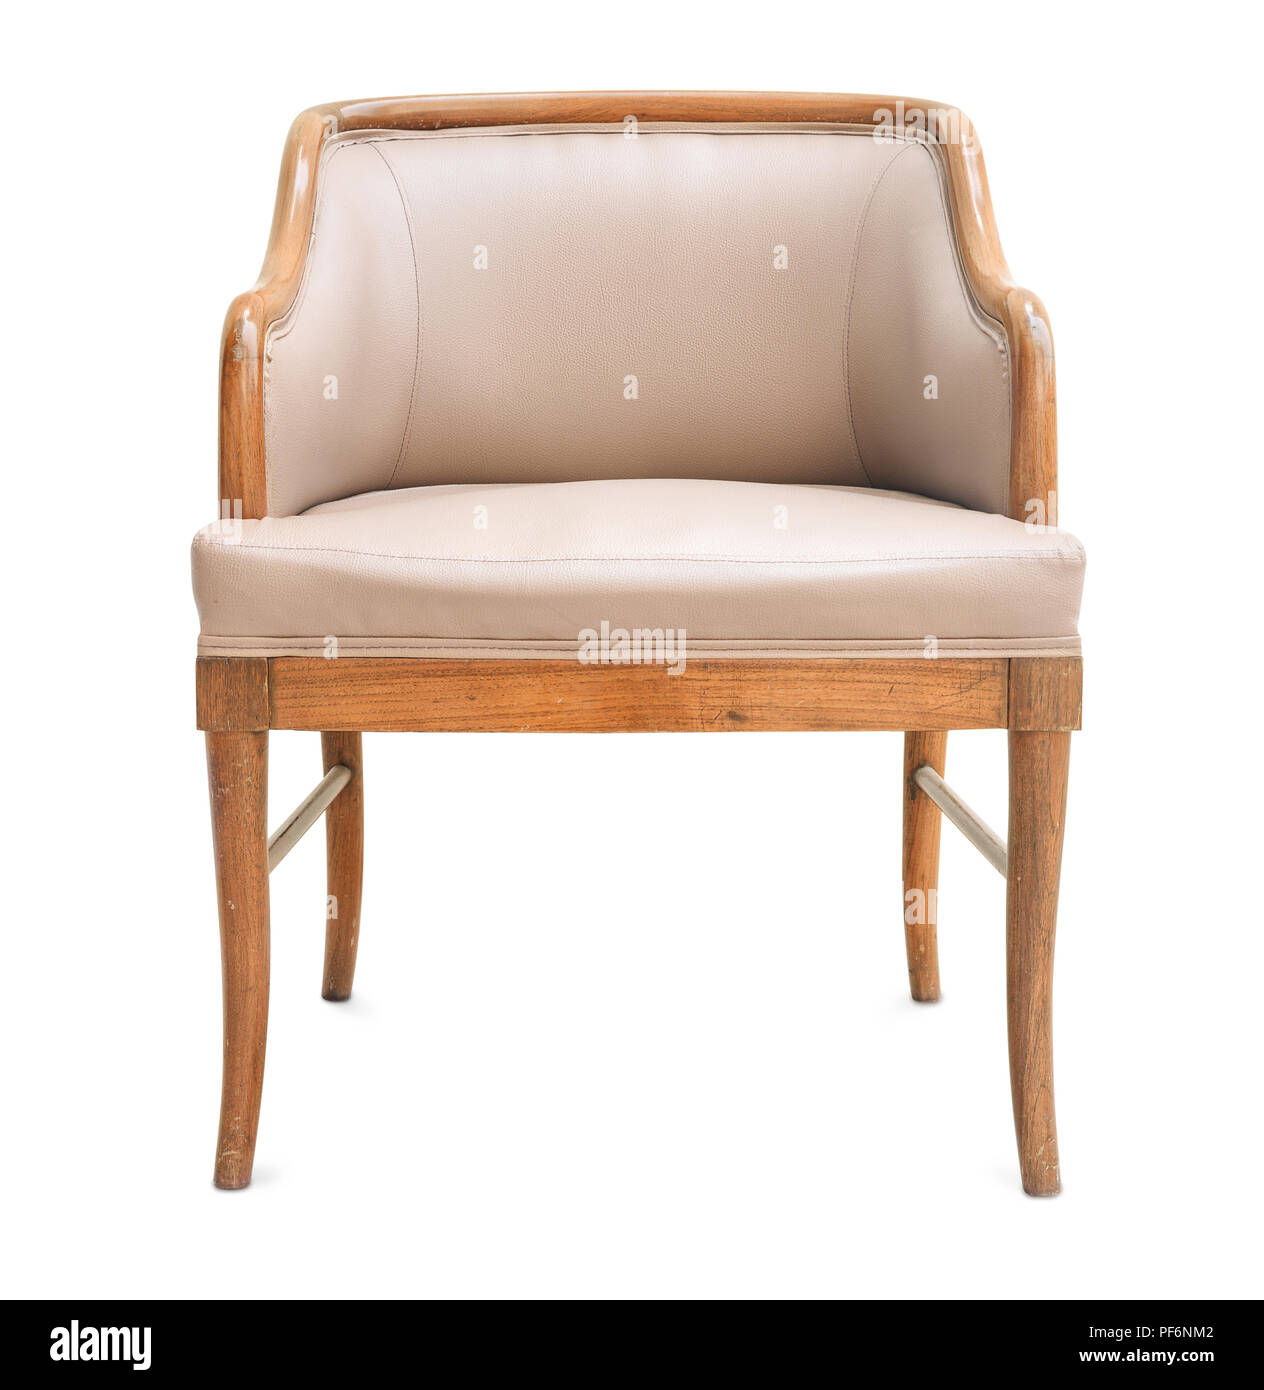 Vieux fauteuil en bois et cuir isolated on white Banque D'Images